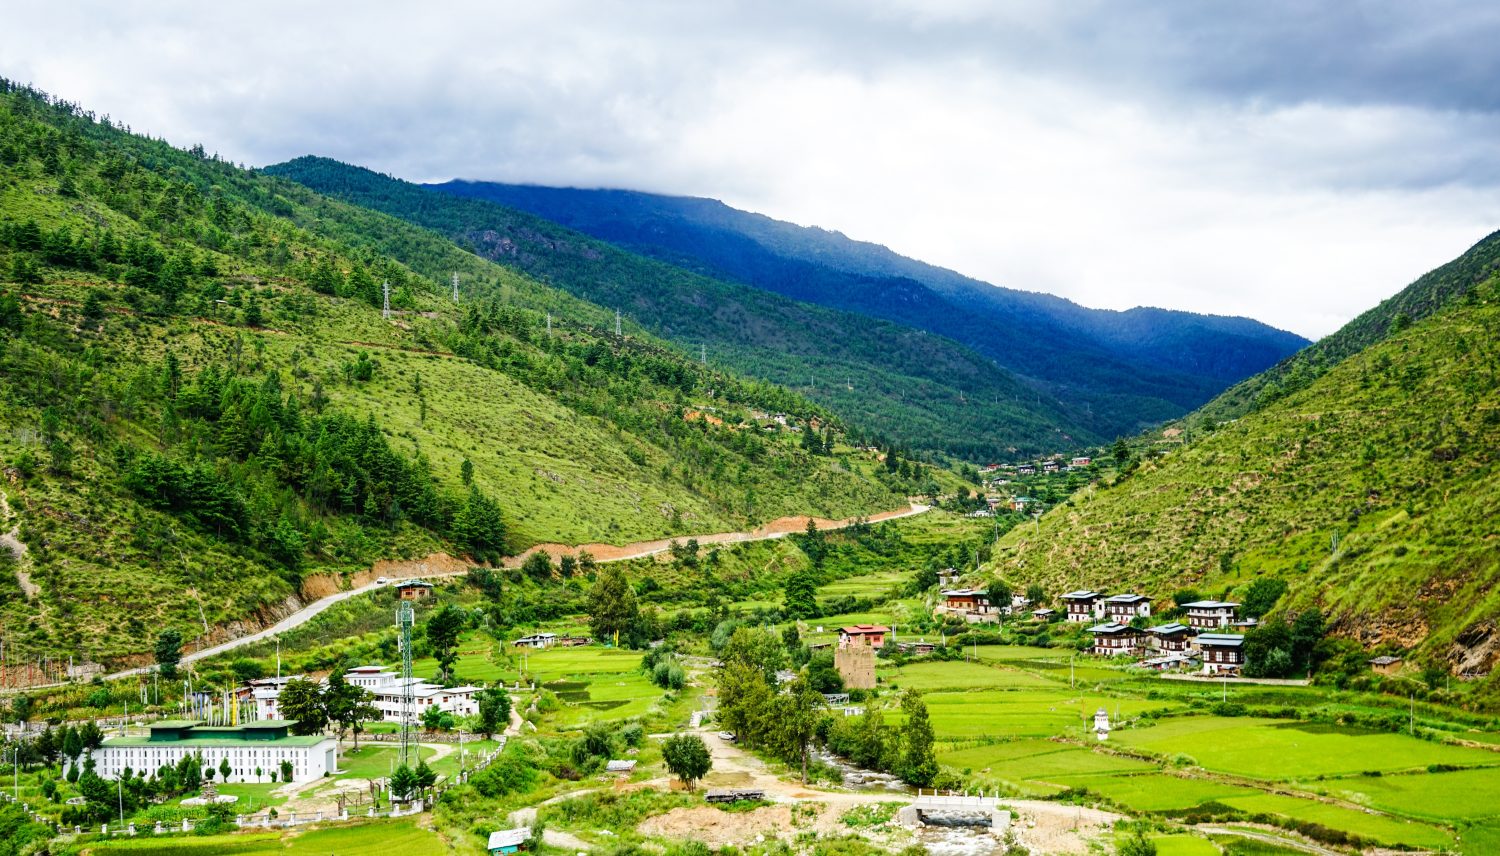 Paesaggio di montagna con valle verde a Thimphu, Bhutan.  Il Bhutan si trova sulle pendici meridionali dell'Himalaya orientale.